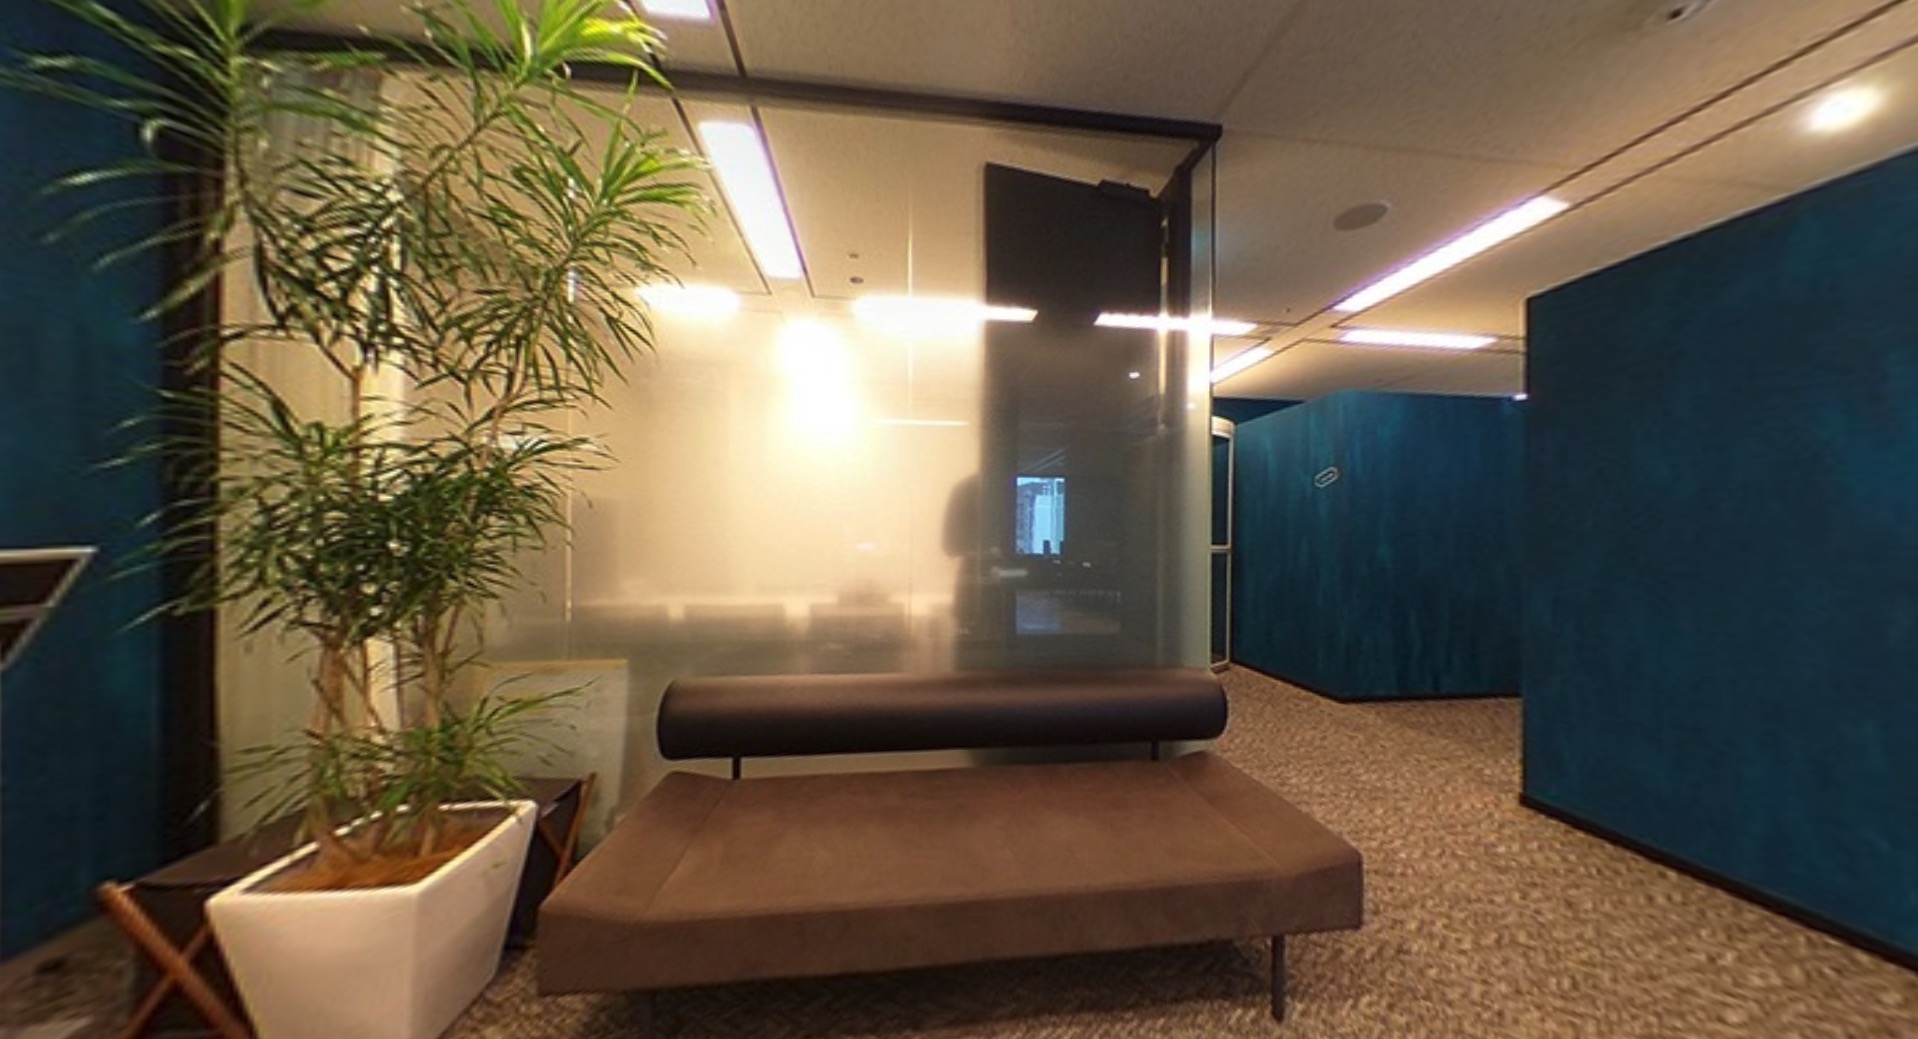 ワークスタイリング品川グランドセントラルタワーのオフィス内部の画像「クライアント用ソファー」